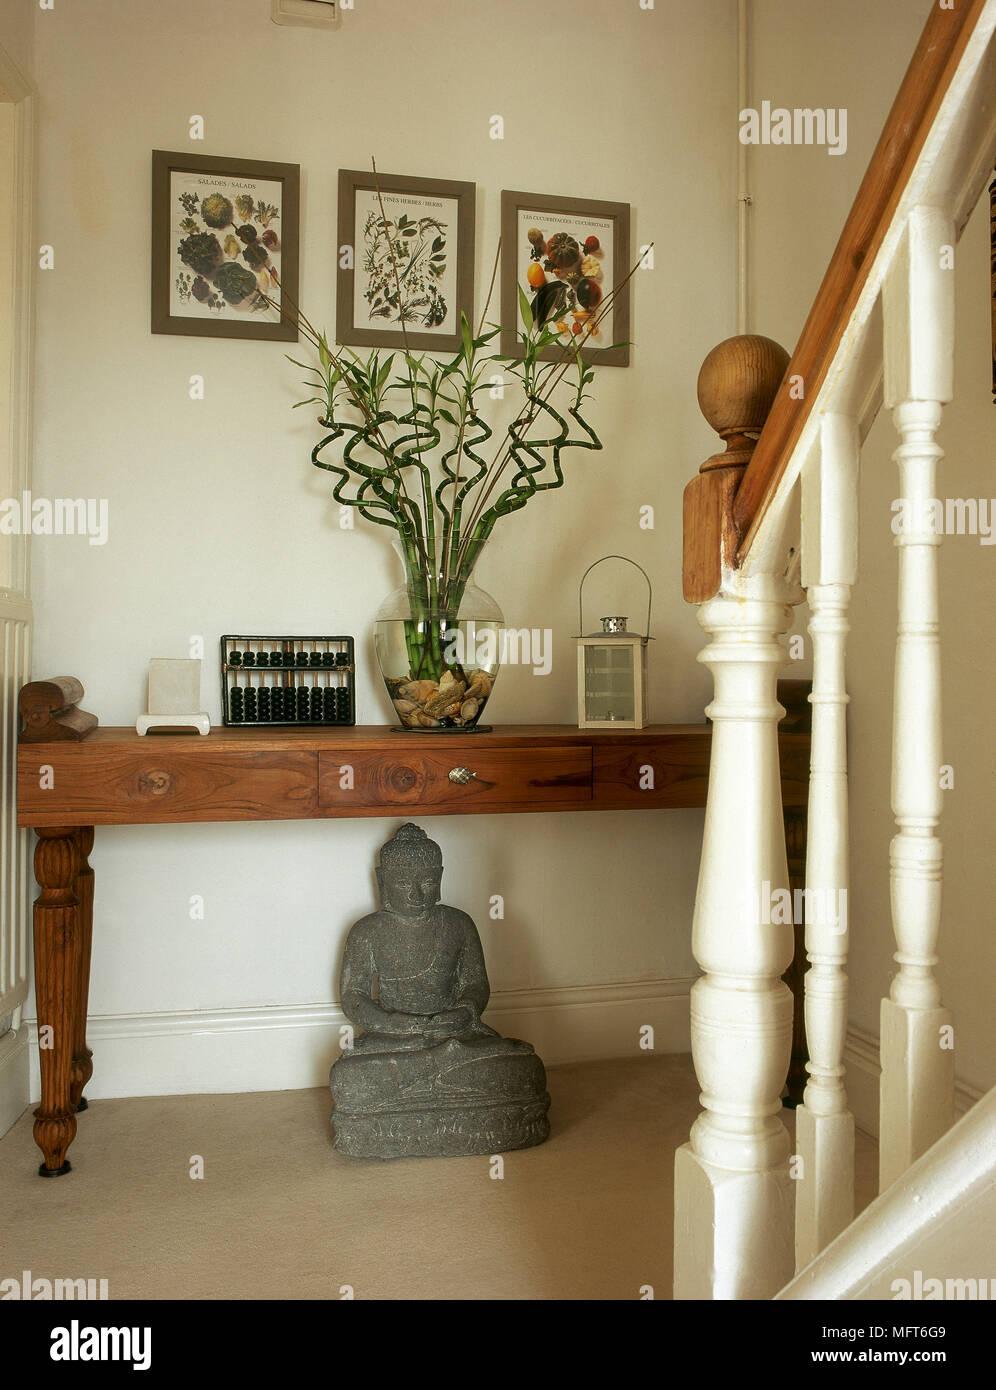 Traditionelle Treppe Landung mit einer newel Post, gerahmten Botanical Artwork, Buddha Statue, und einem Holztisch. Stockfoto